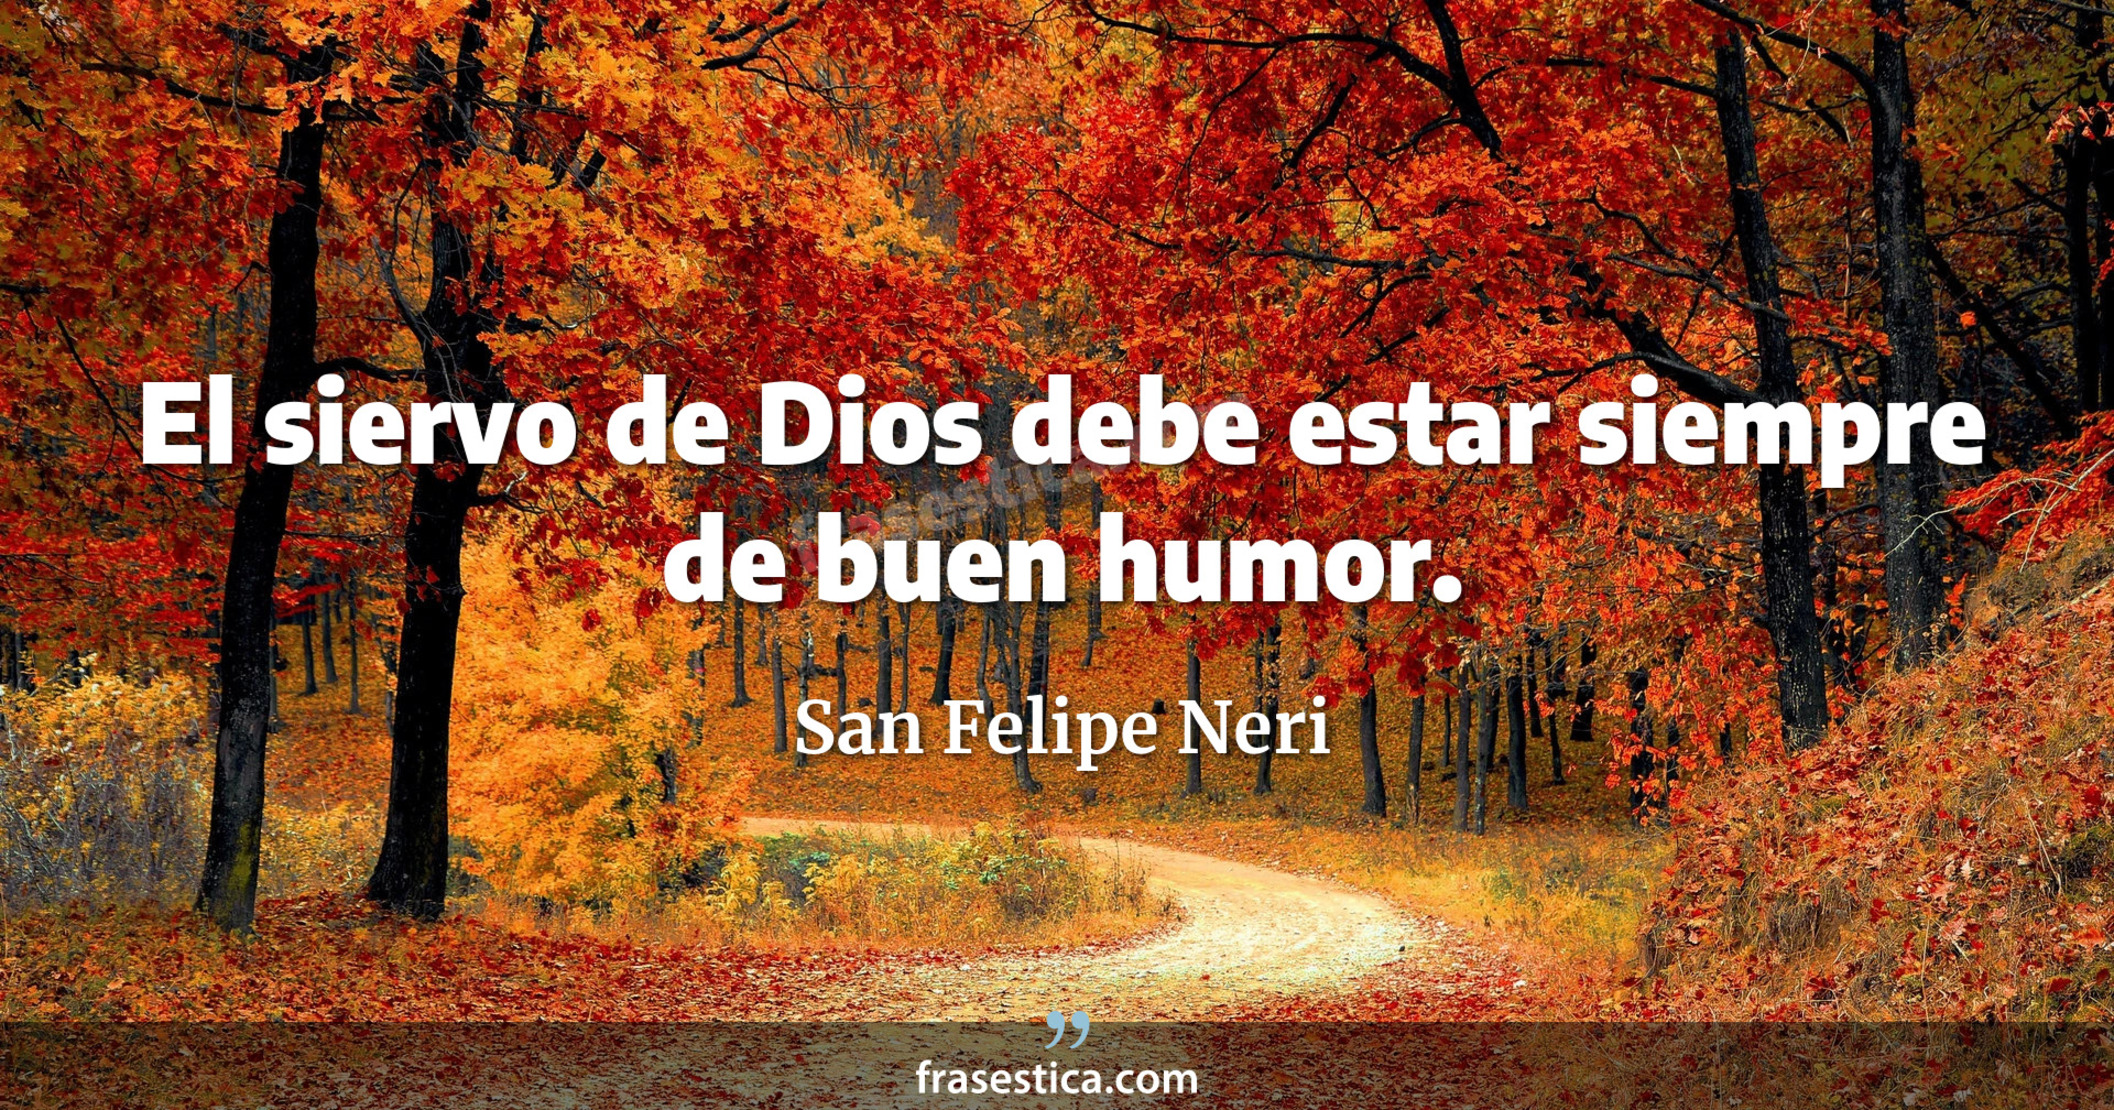 El siervo de Dios debe estar siempre de buen humor. - San Felipe Neri